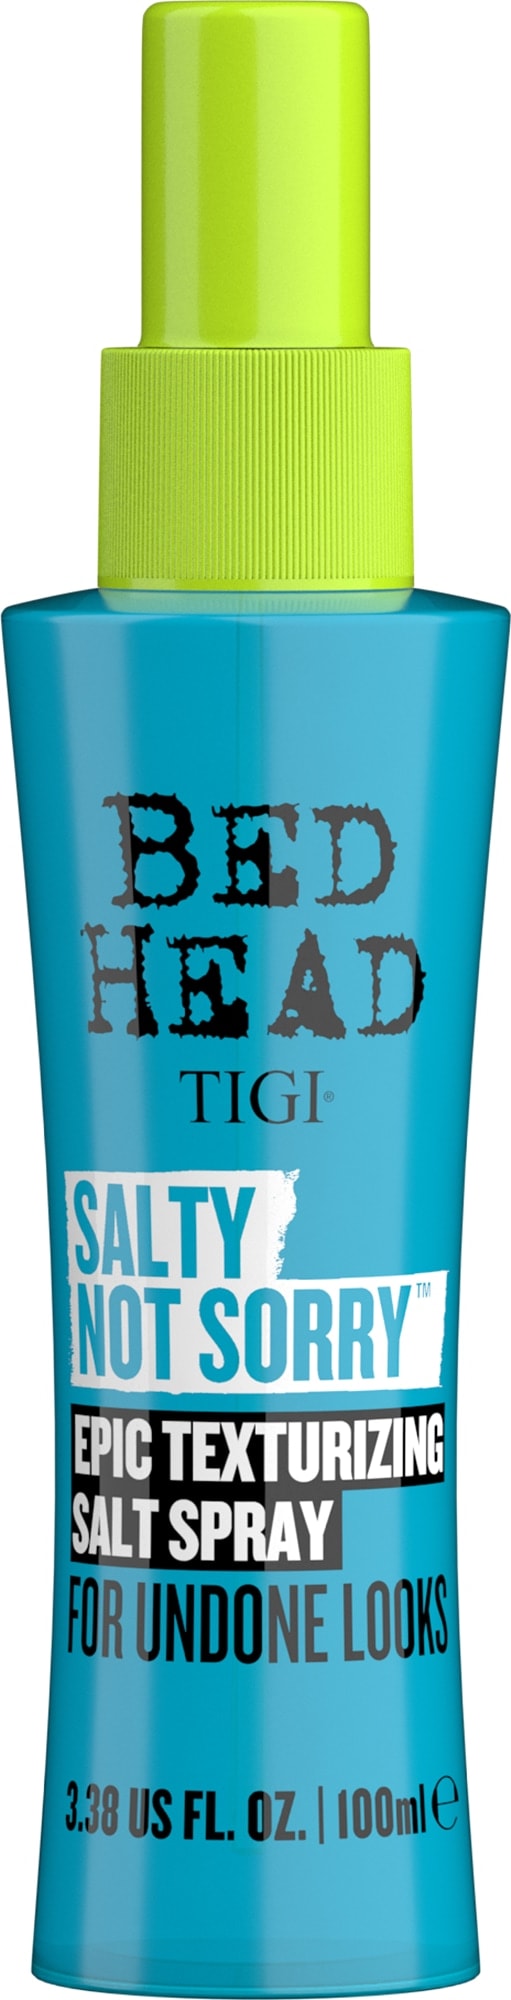 Tigi bed head salty not sorry textur текстурирующий солевой спрей для волос 100мл